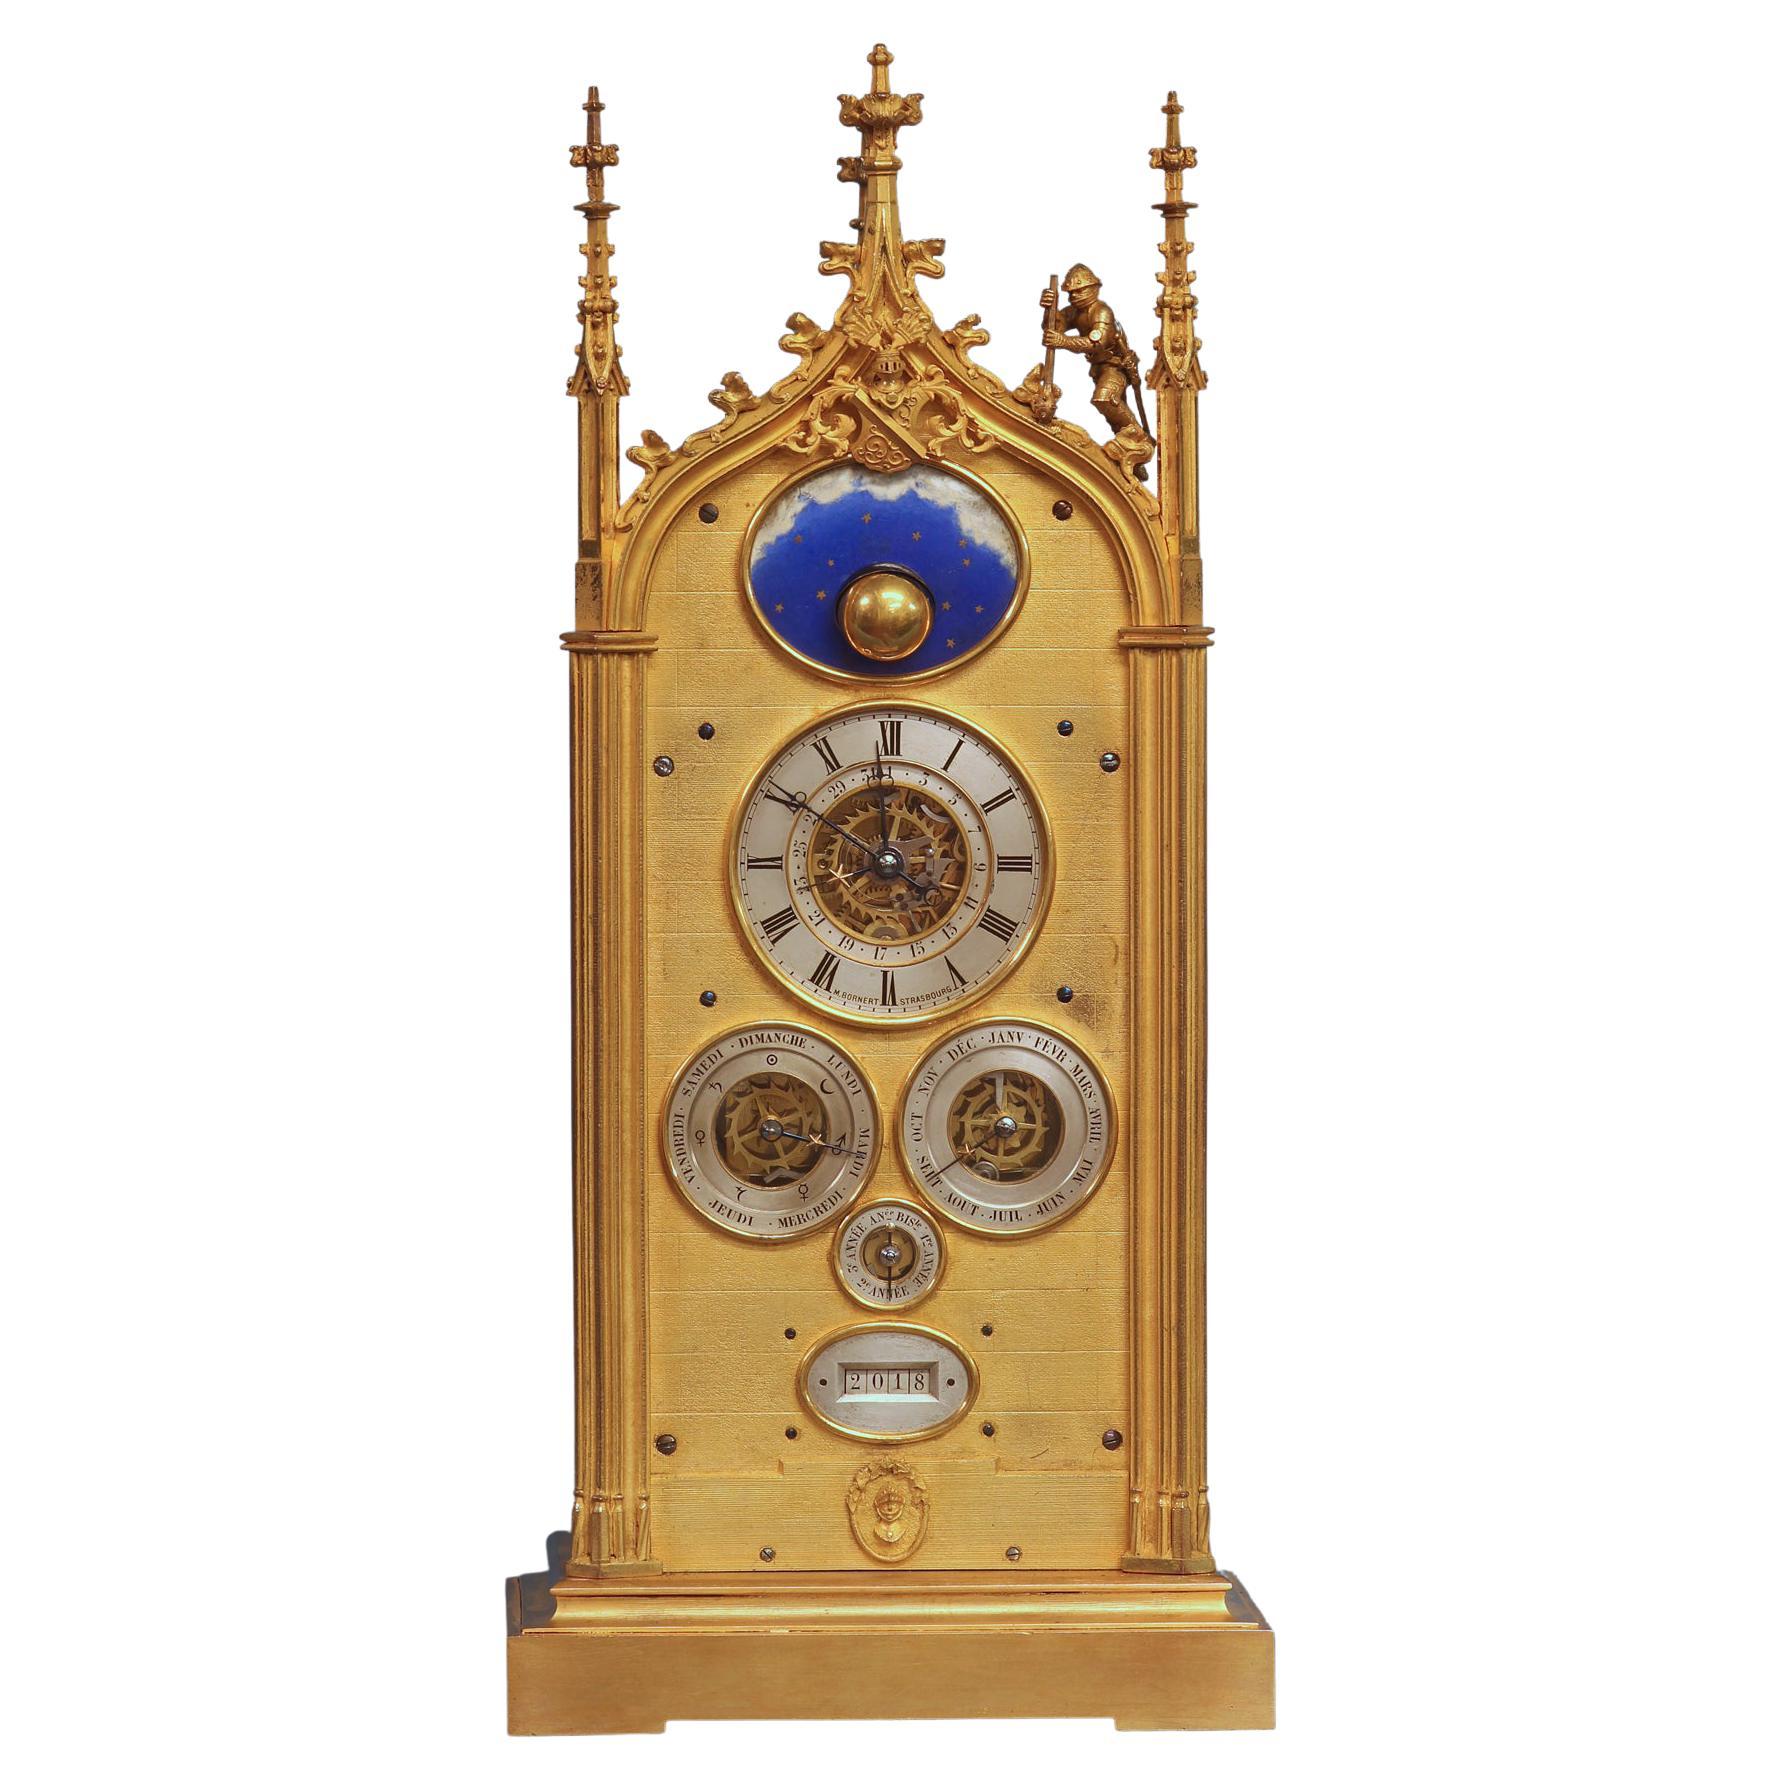 c.1850 Reloj francés de manto con calendario perpetuo de varias esferas y luna giratoria